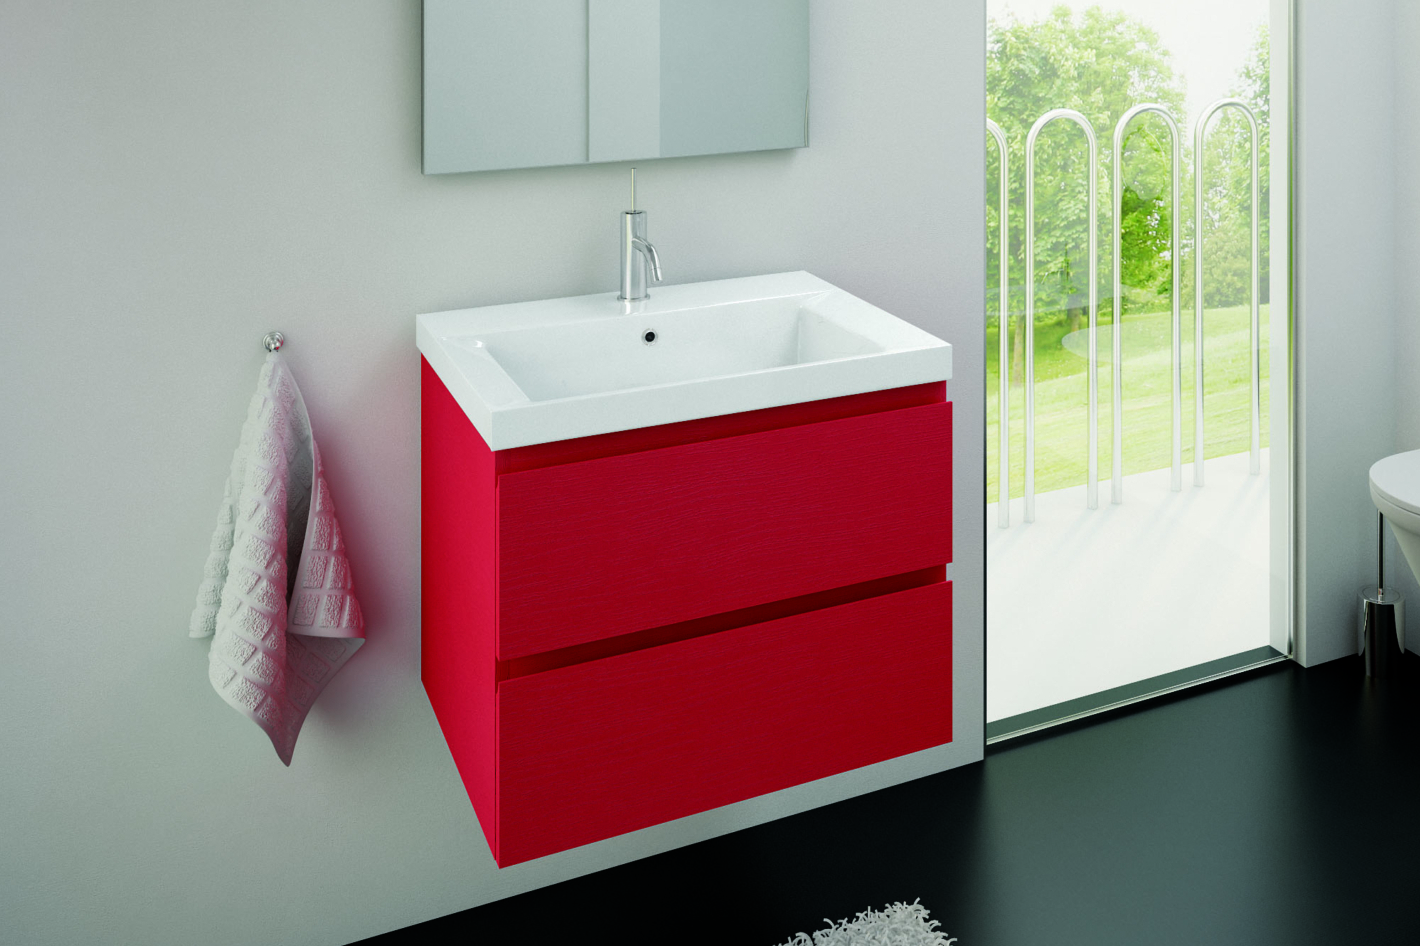 Badmöbel rot- mit Waschtisch-Unterschrank. In vielen bunten Farben erhältlich, auch in blau, grün etc.